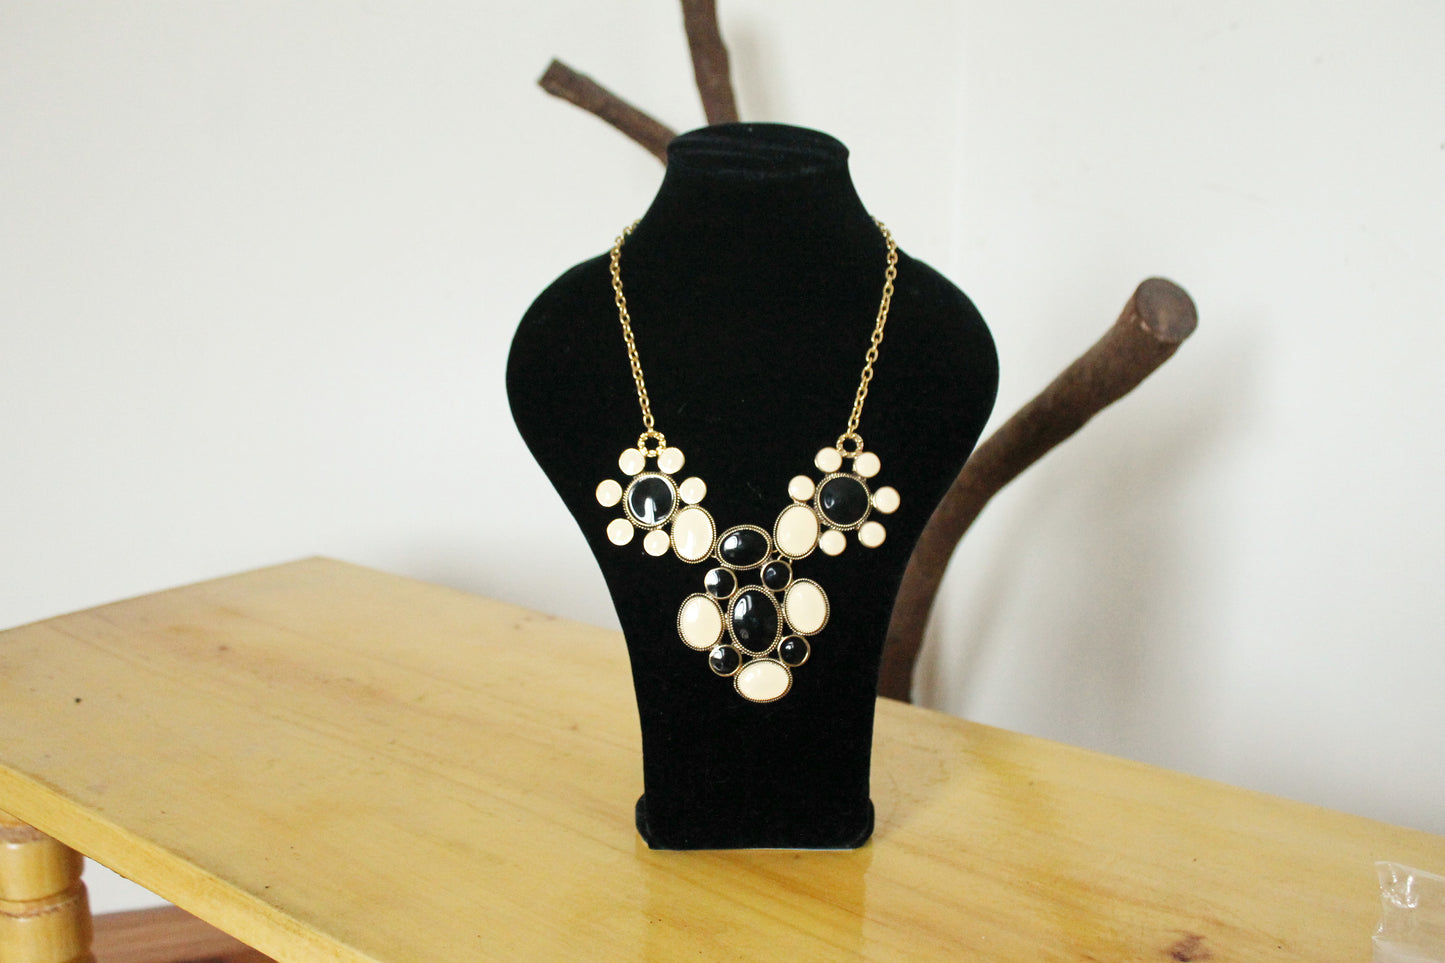 Vintage Flower necklace from Germany - Nekclace 1990s - Germany vintage bijouterie - gift neckalce